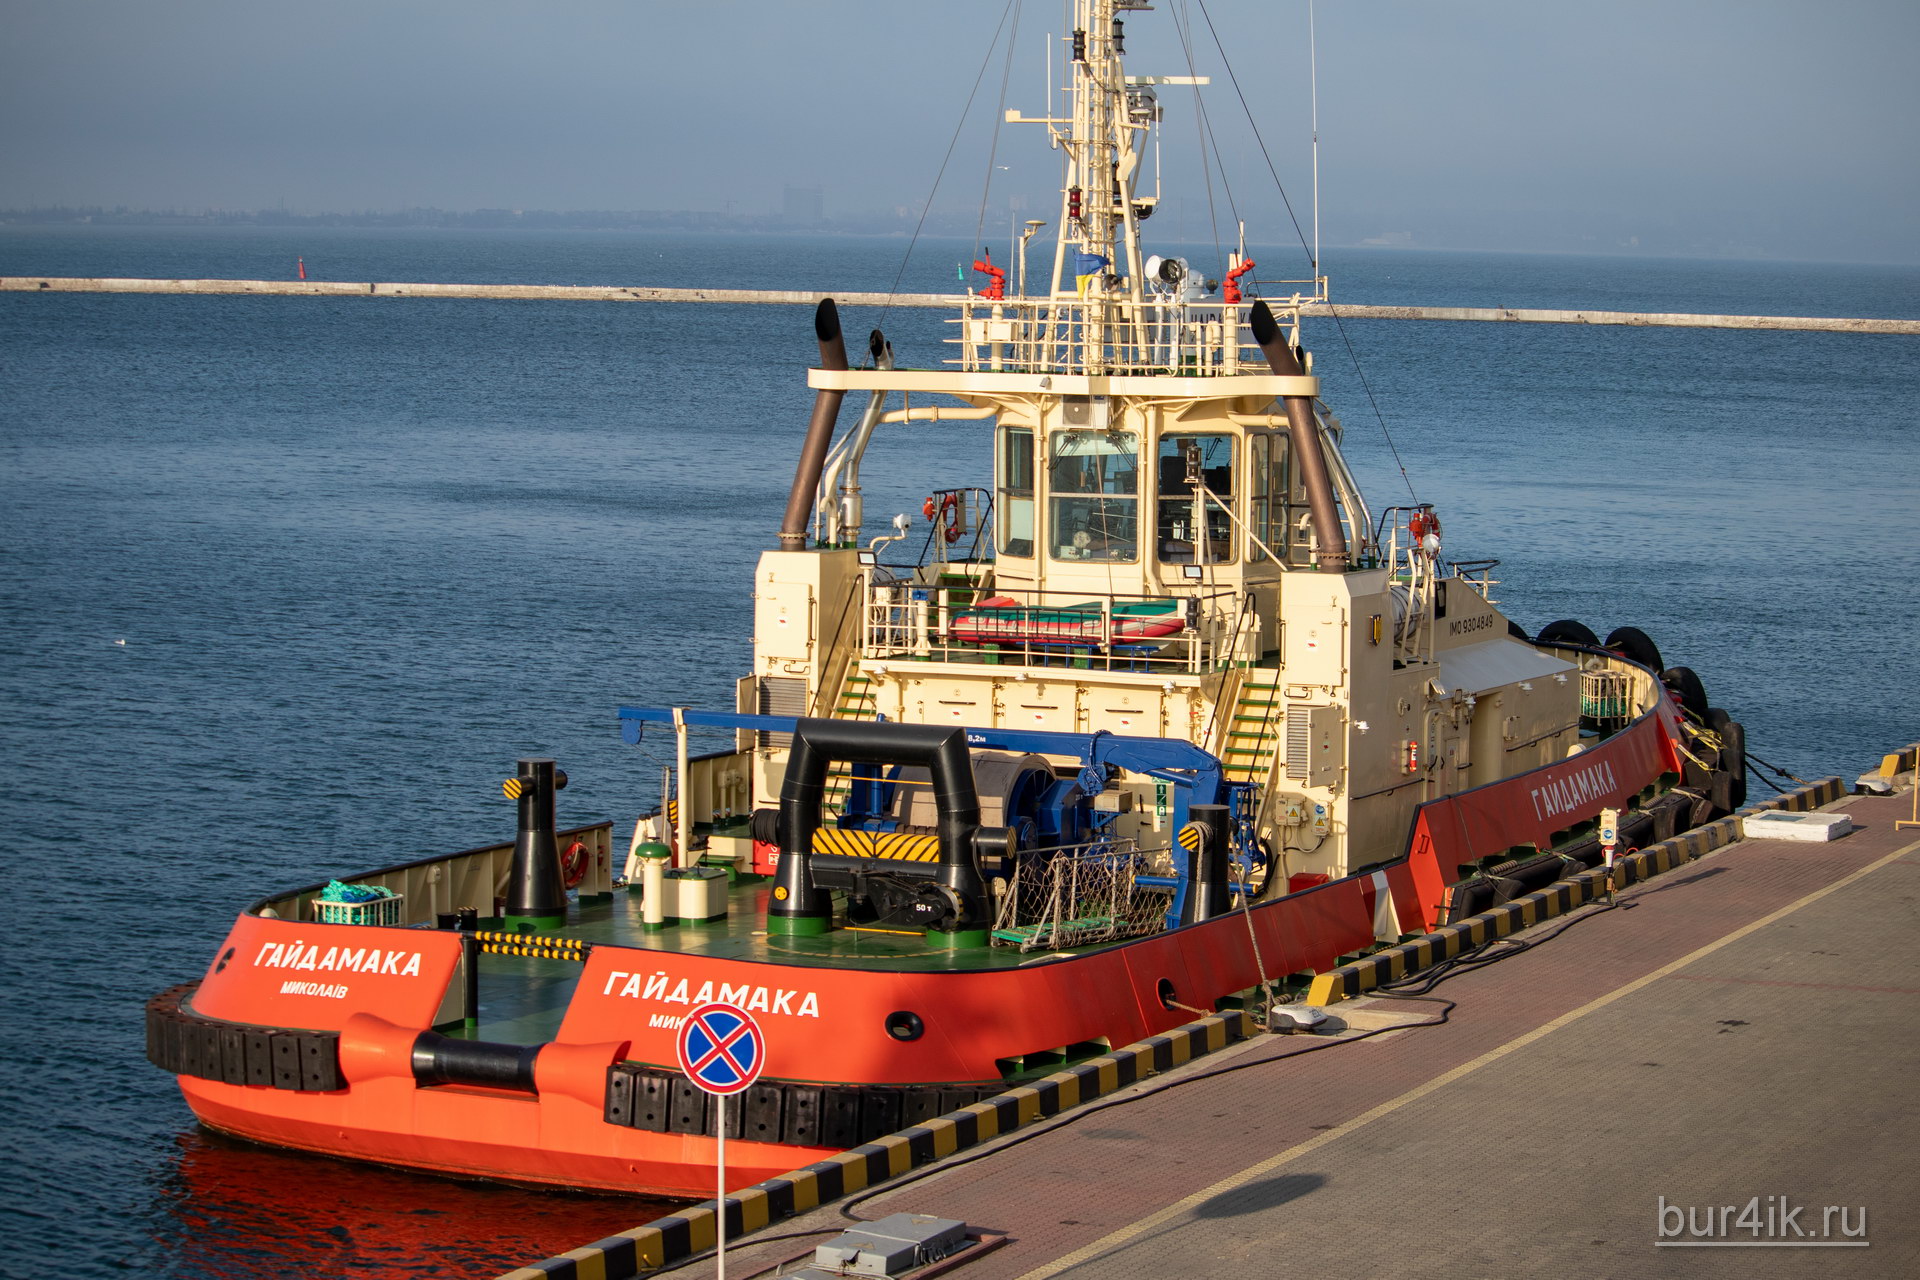 Техническое судно под названием Гайдамака в порту города Одесса 1